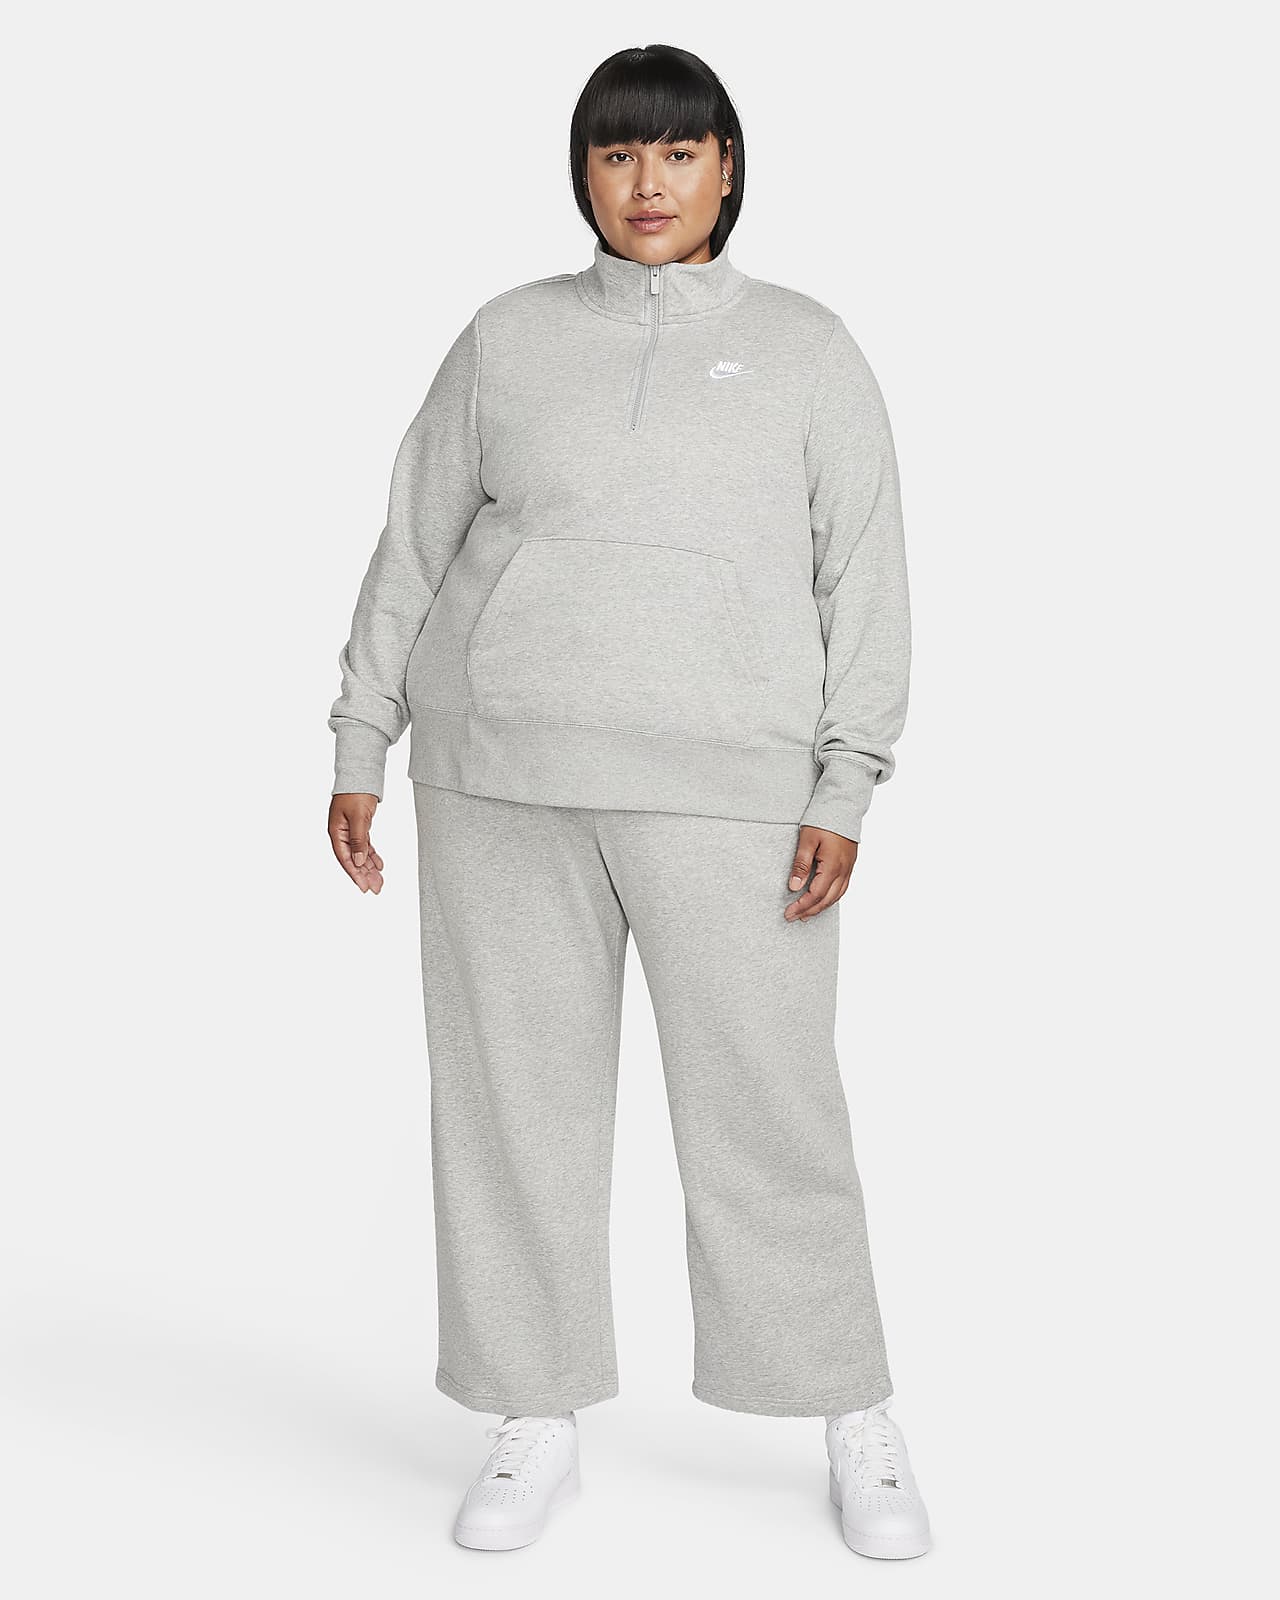 Nike Sportswear Women's Plus Size Quarter Zip HYBRID WARM Fleece Top Size  1X